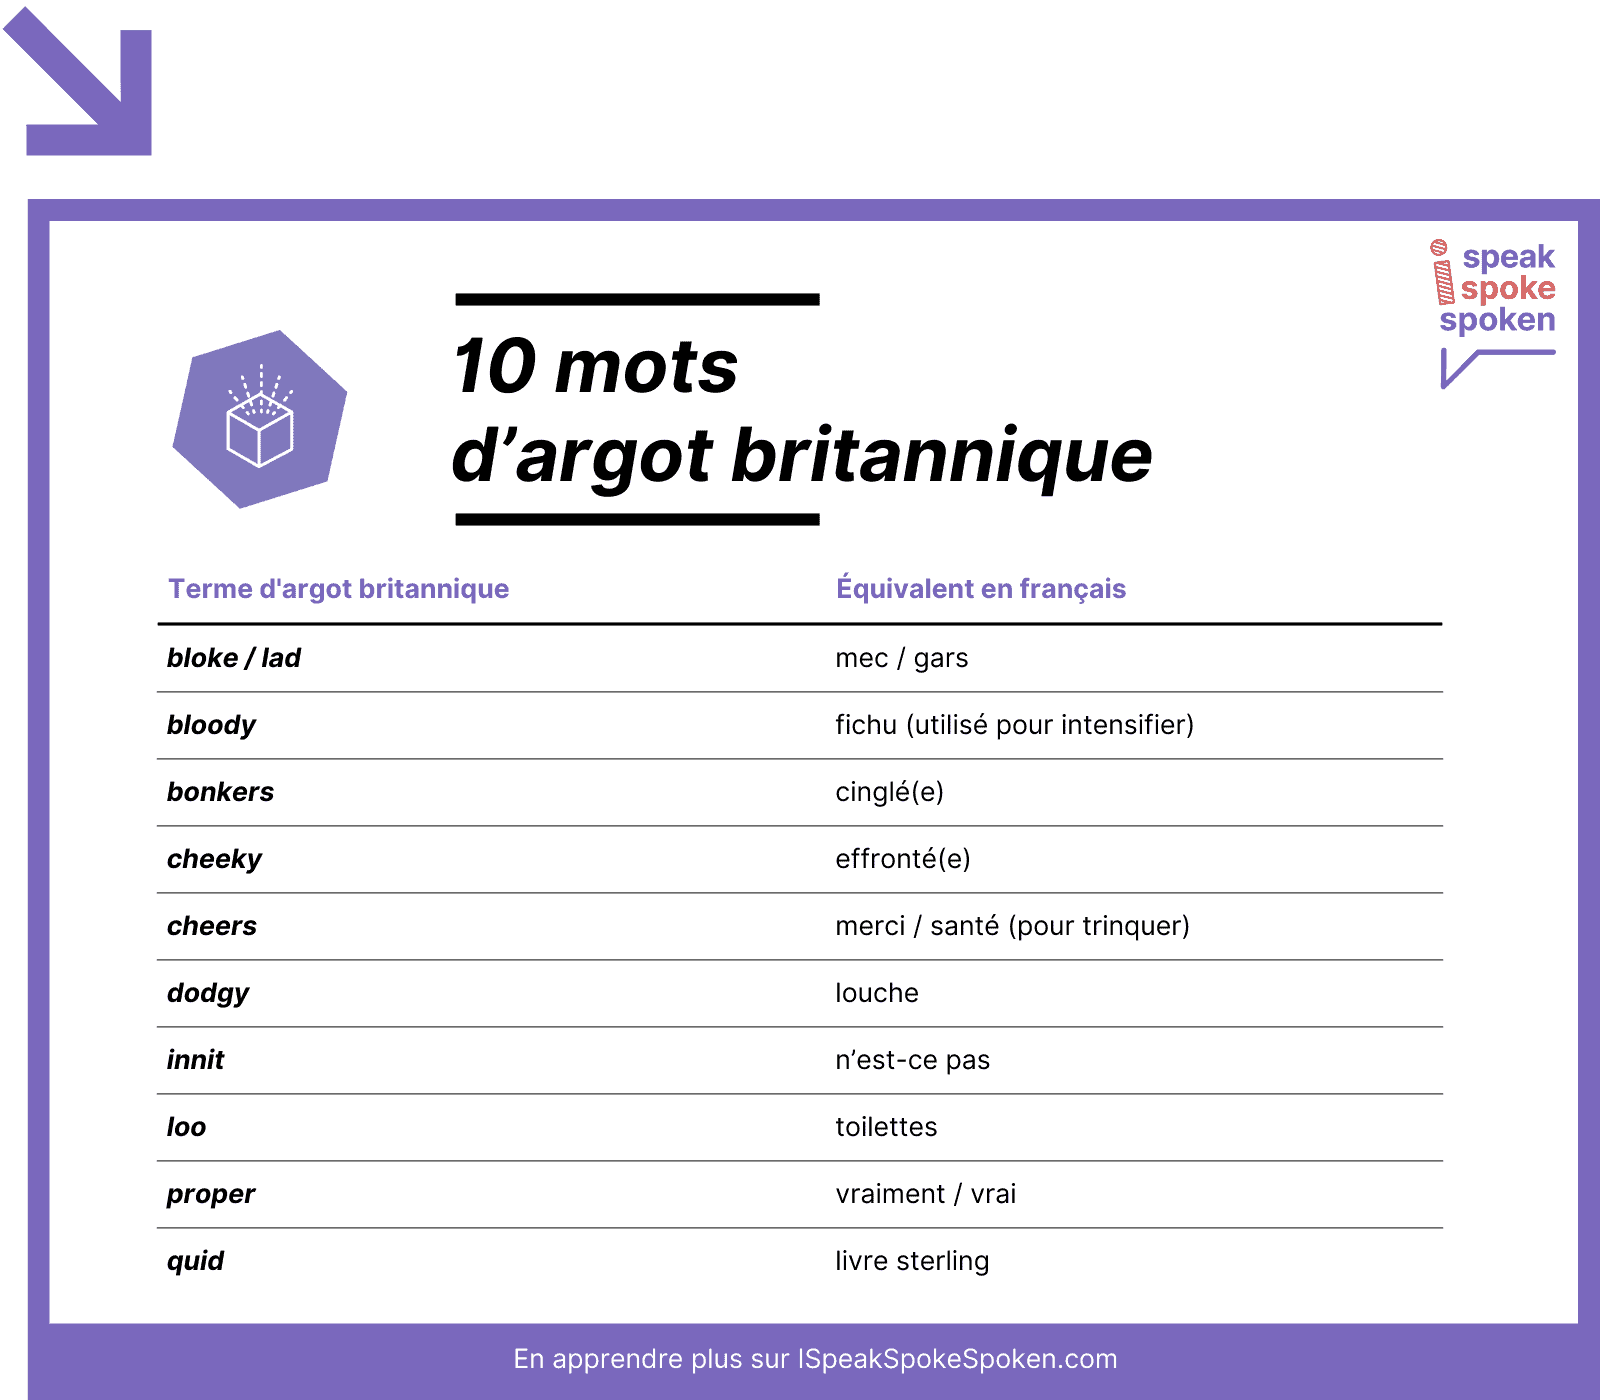 10 mots d’argot britannique